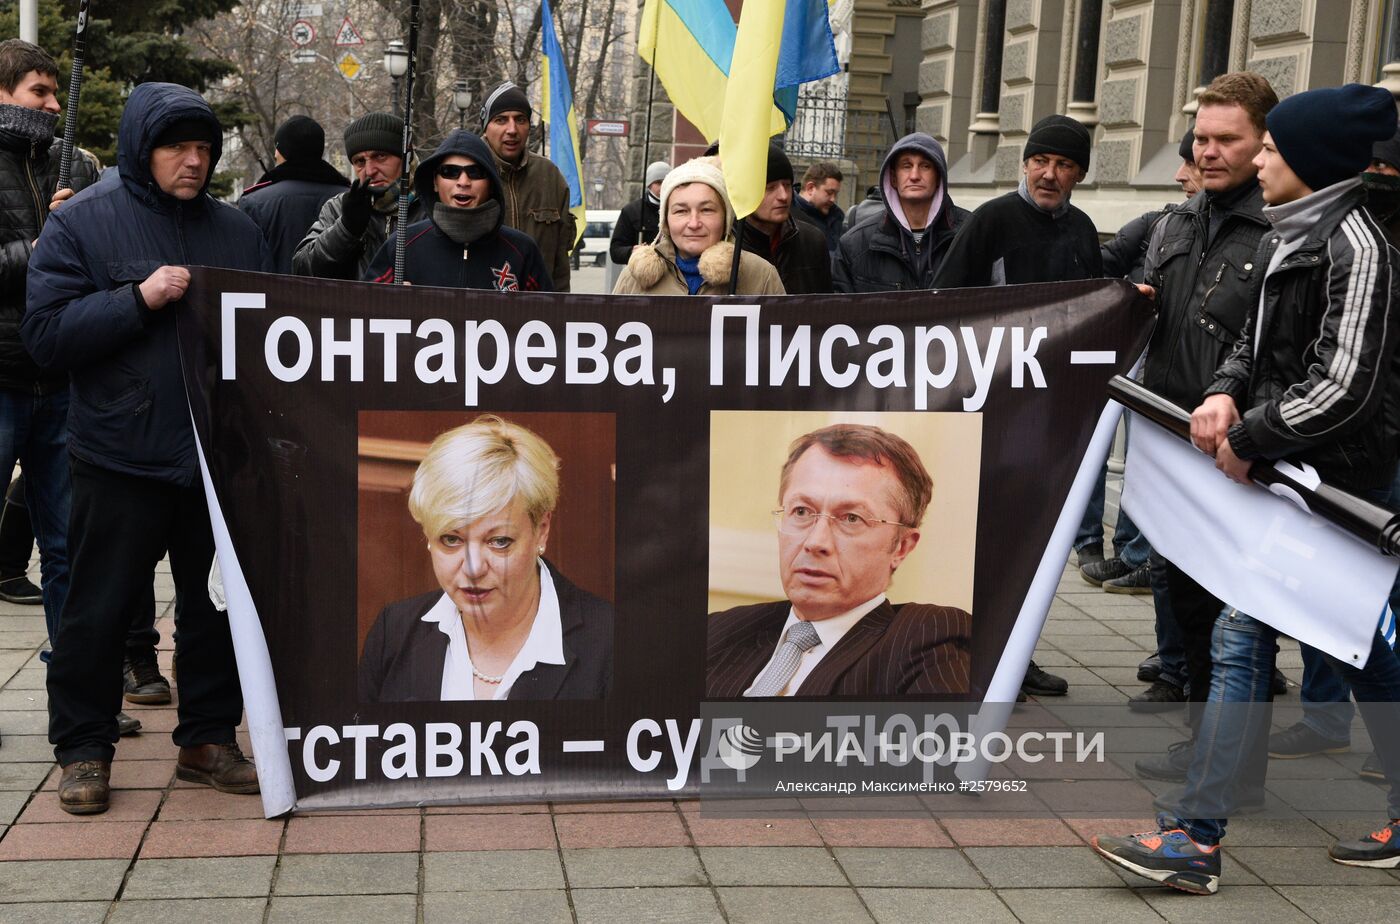 Митинг с требованием отставки главы Нацбанка Украины проходит в Киеве